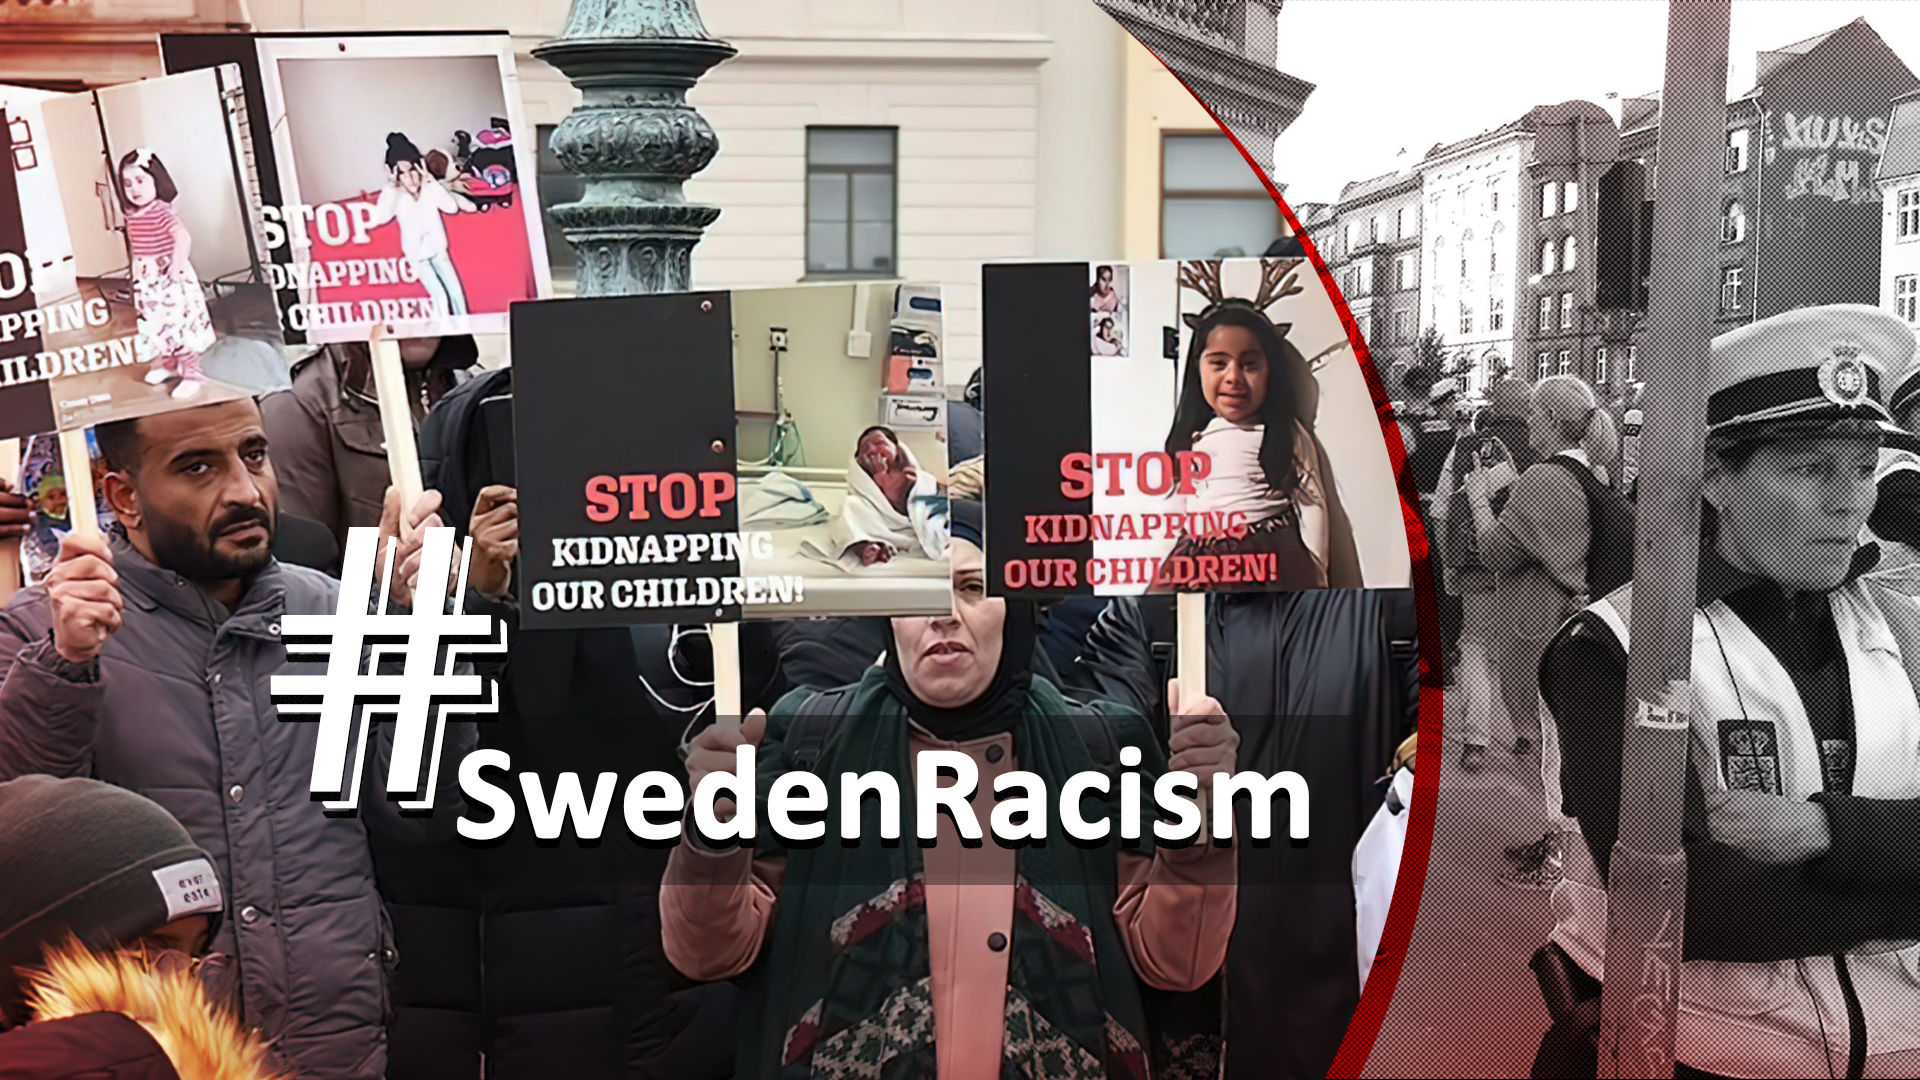 #SwedenRacism